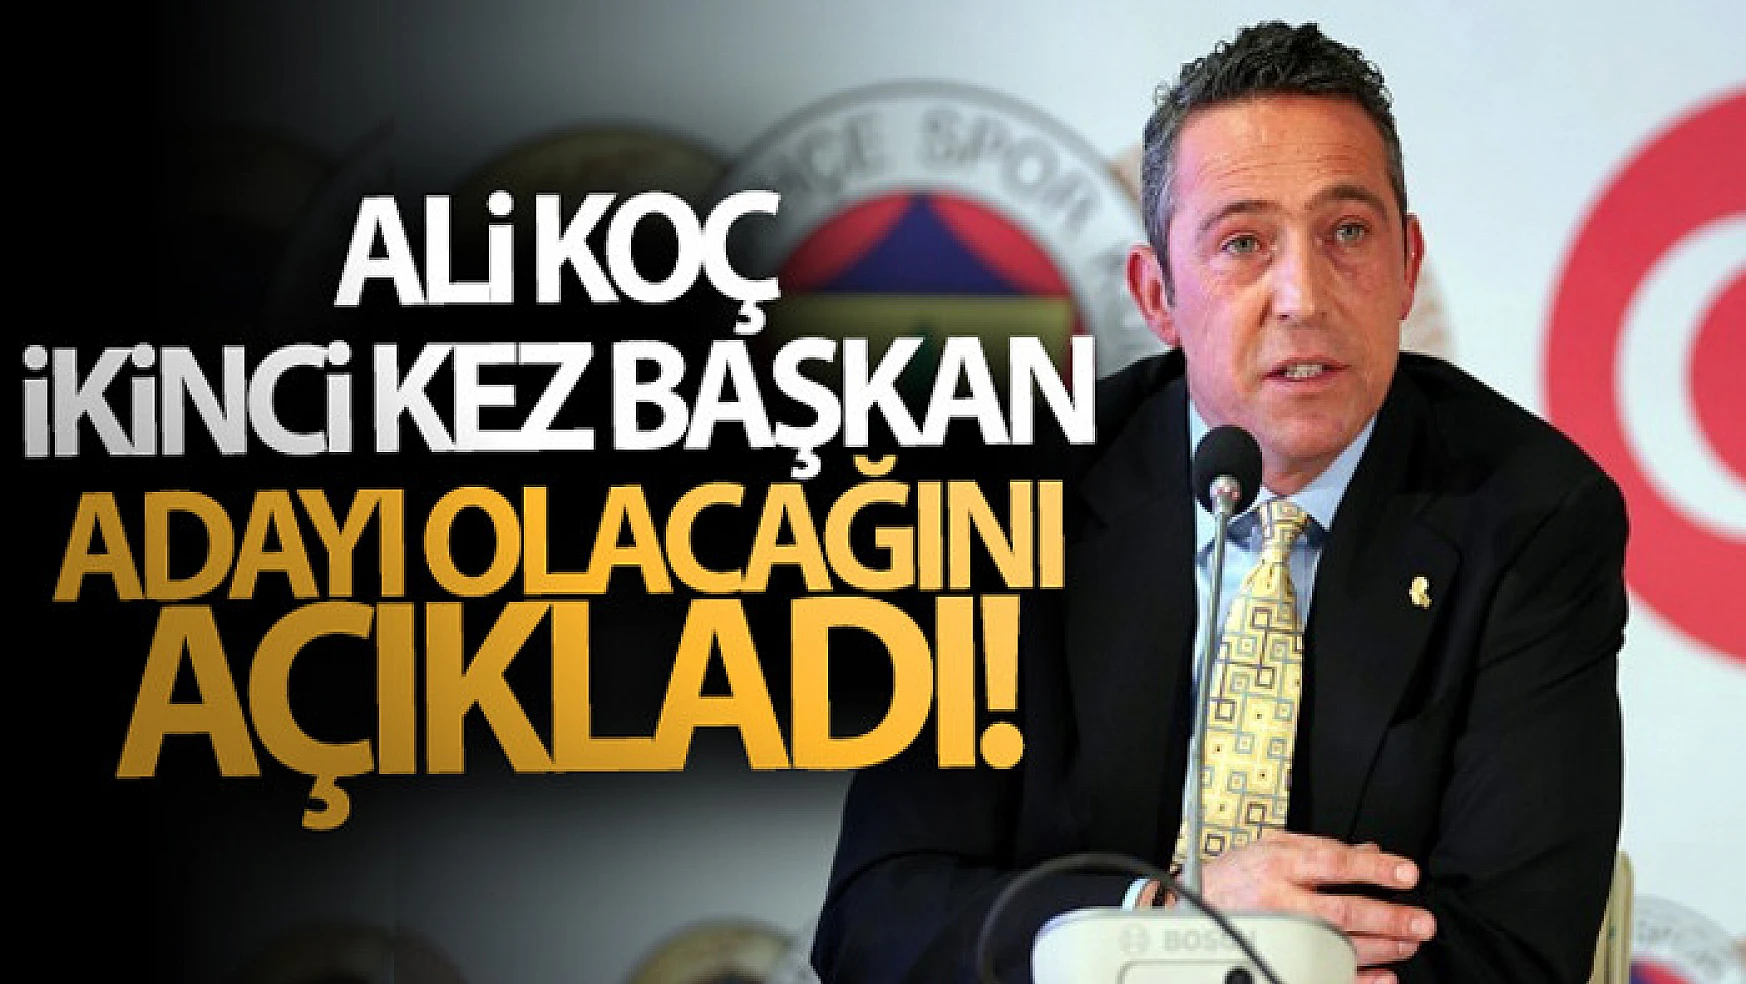 Ali Koç, ikinci kez başkan adayı olacağını açıkladı!